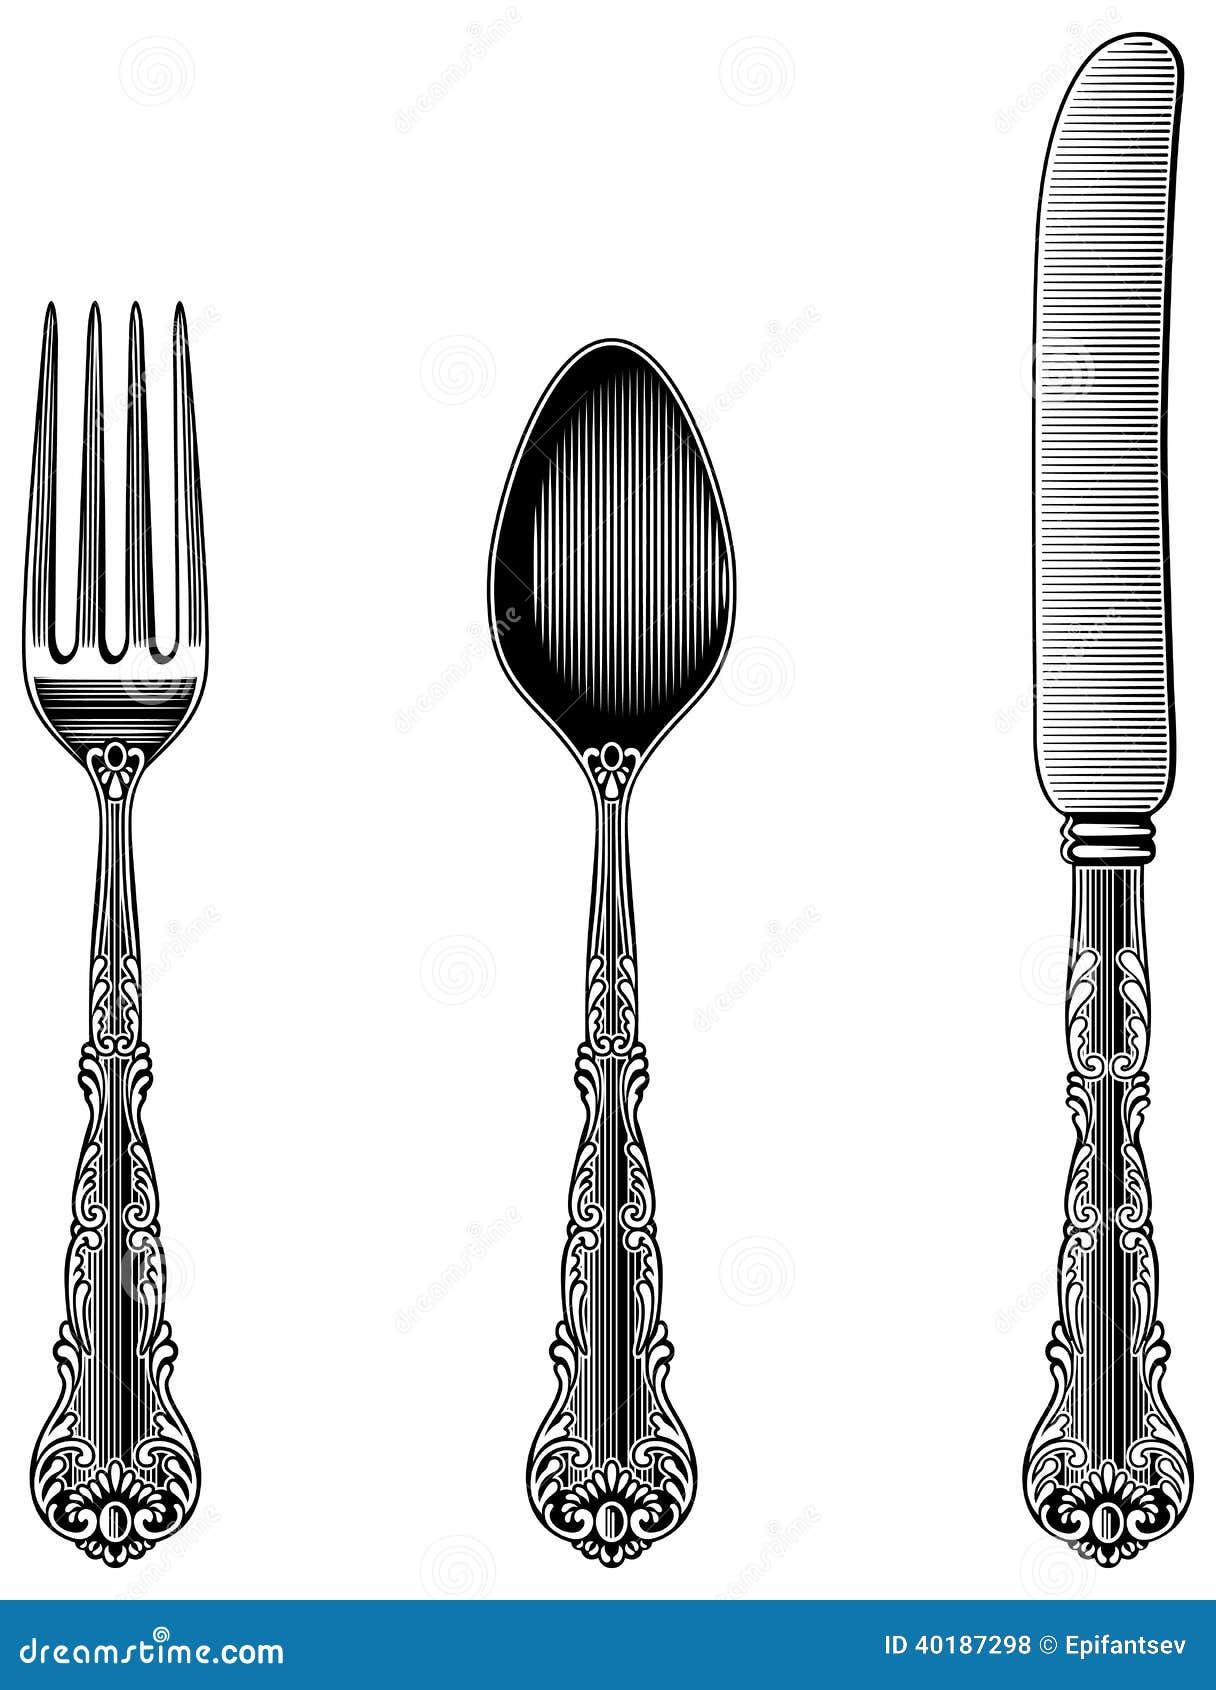 vintage cutlery clip art - photo #6